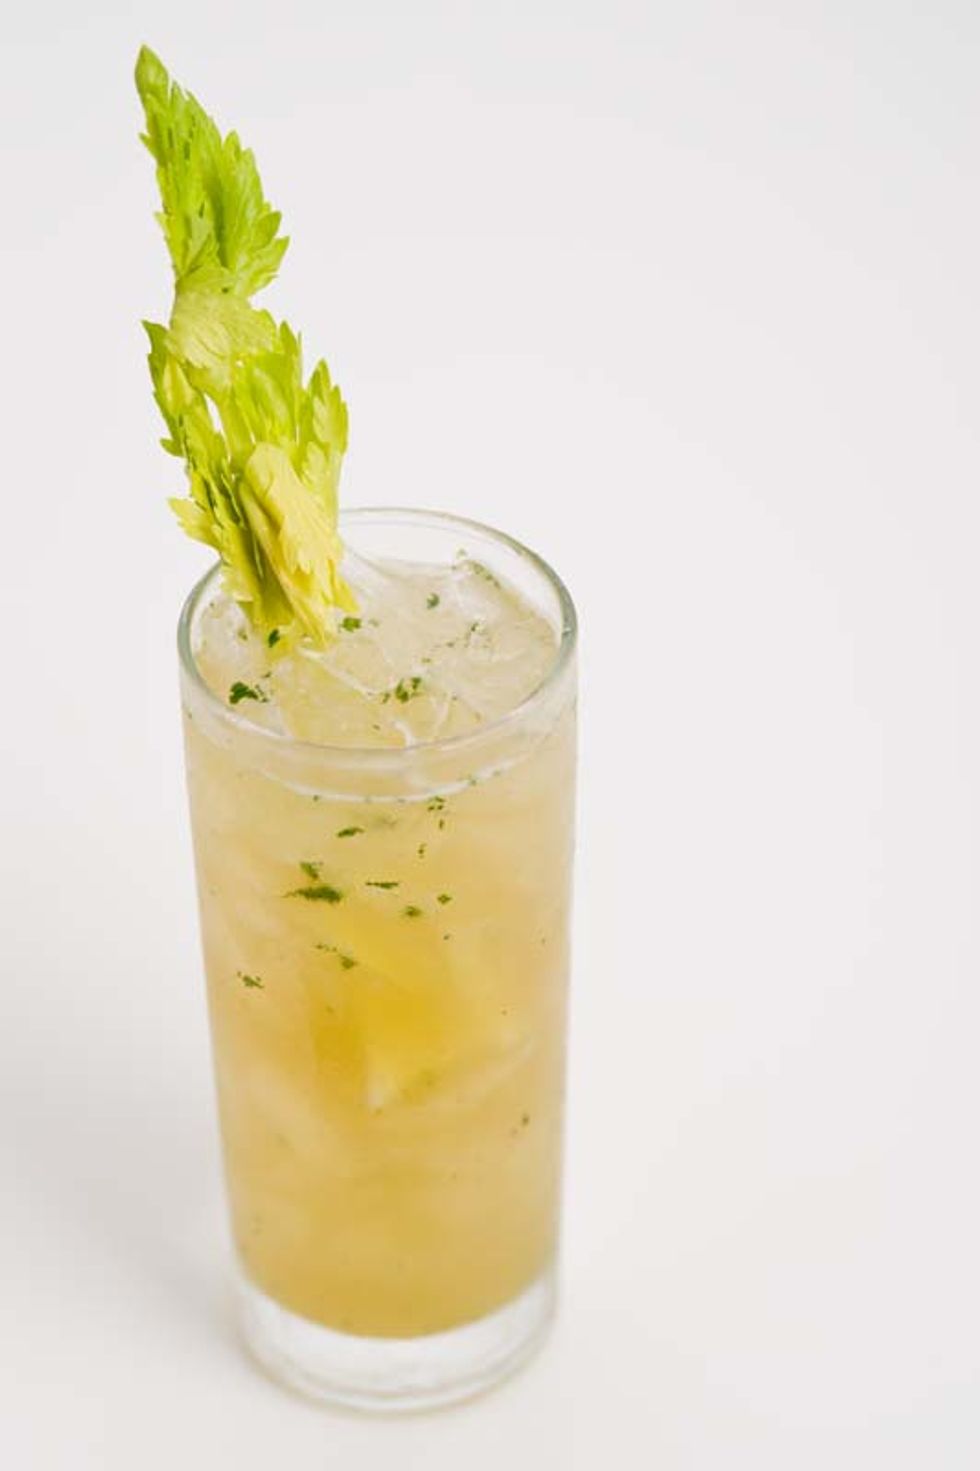 Secret Recipe: Celery Cup from Elixir